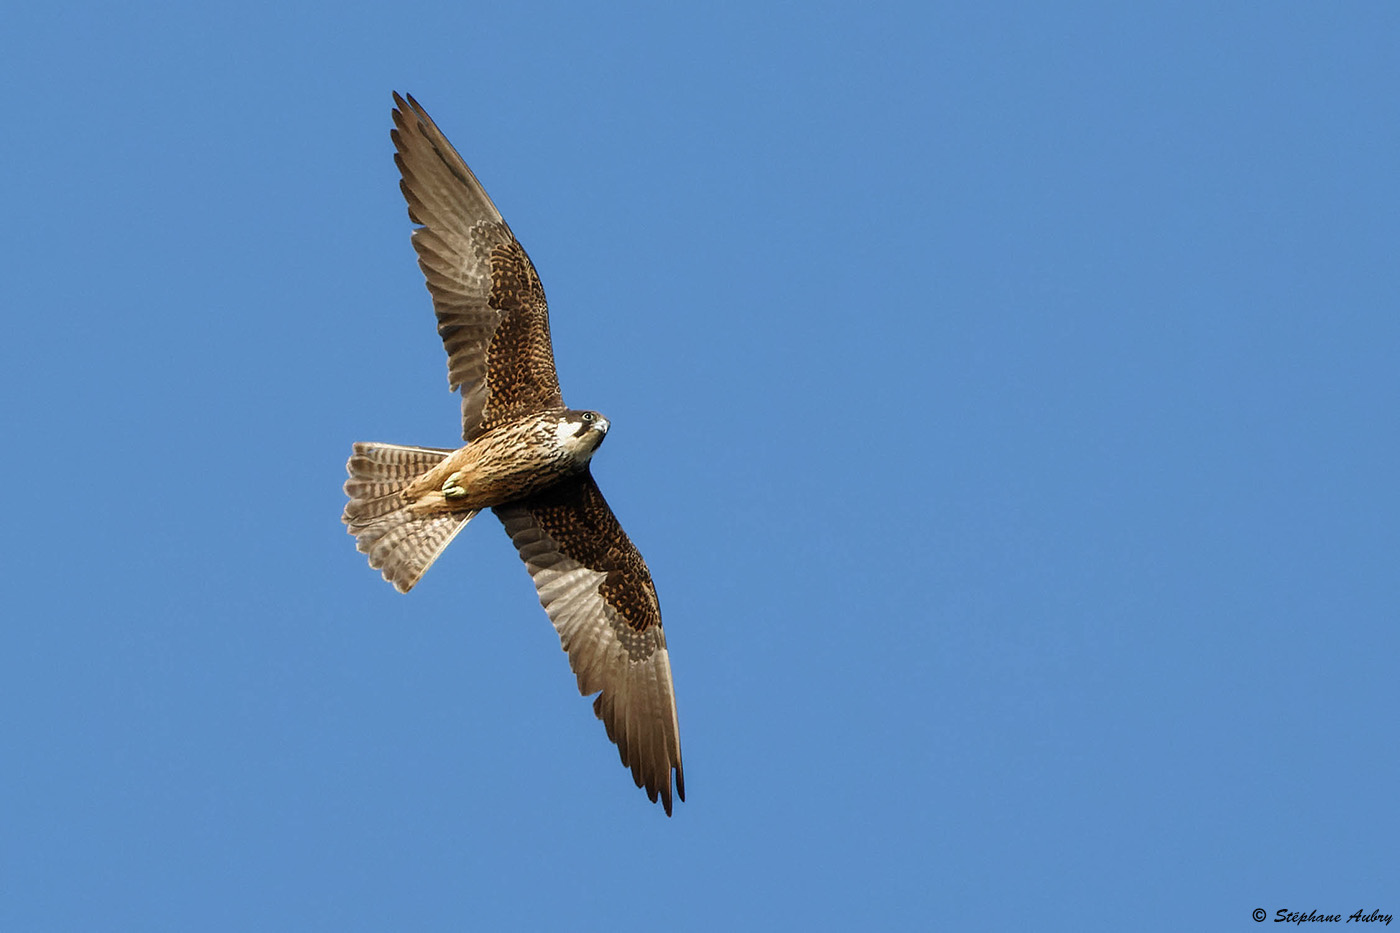 Faucon dElonore, Falco eleonorae